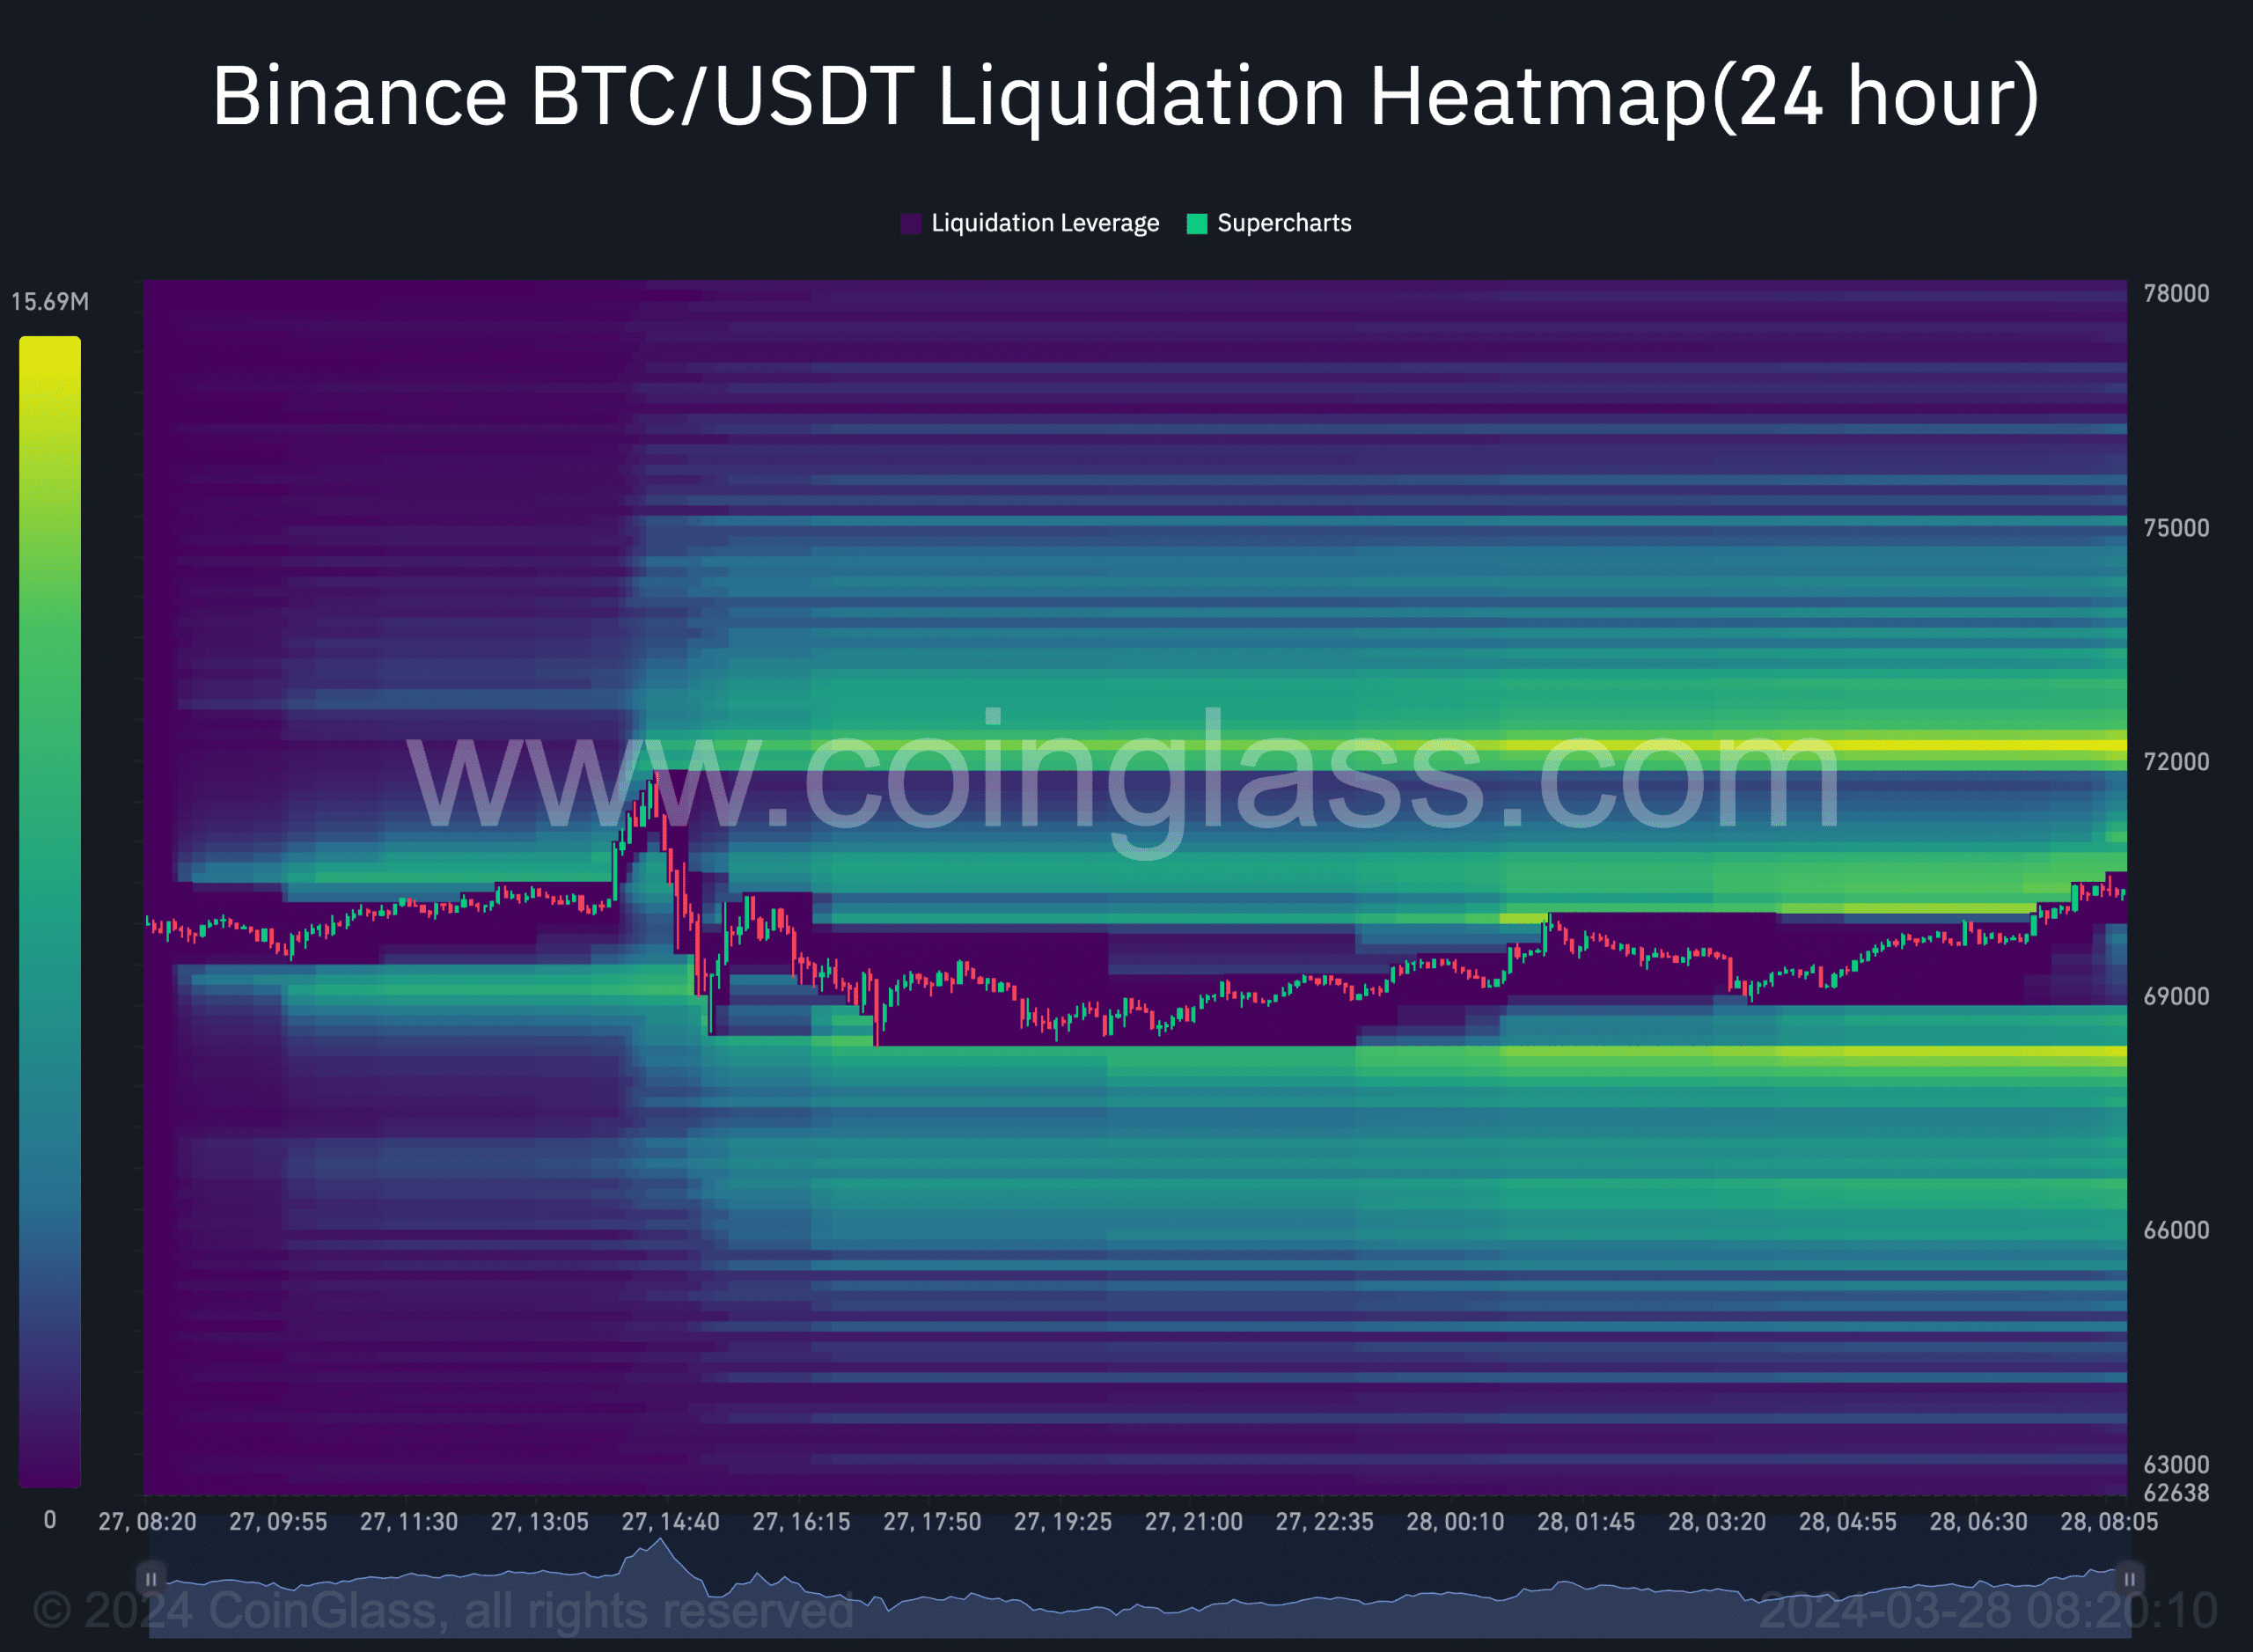 La carte thermique de liquidation de Bitcoin suggère des liquidations plus courtes